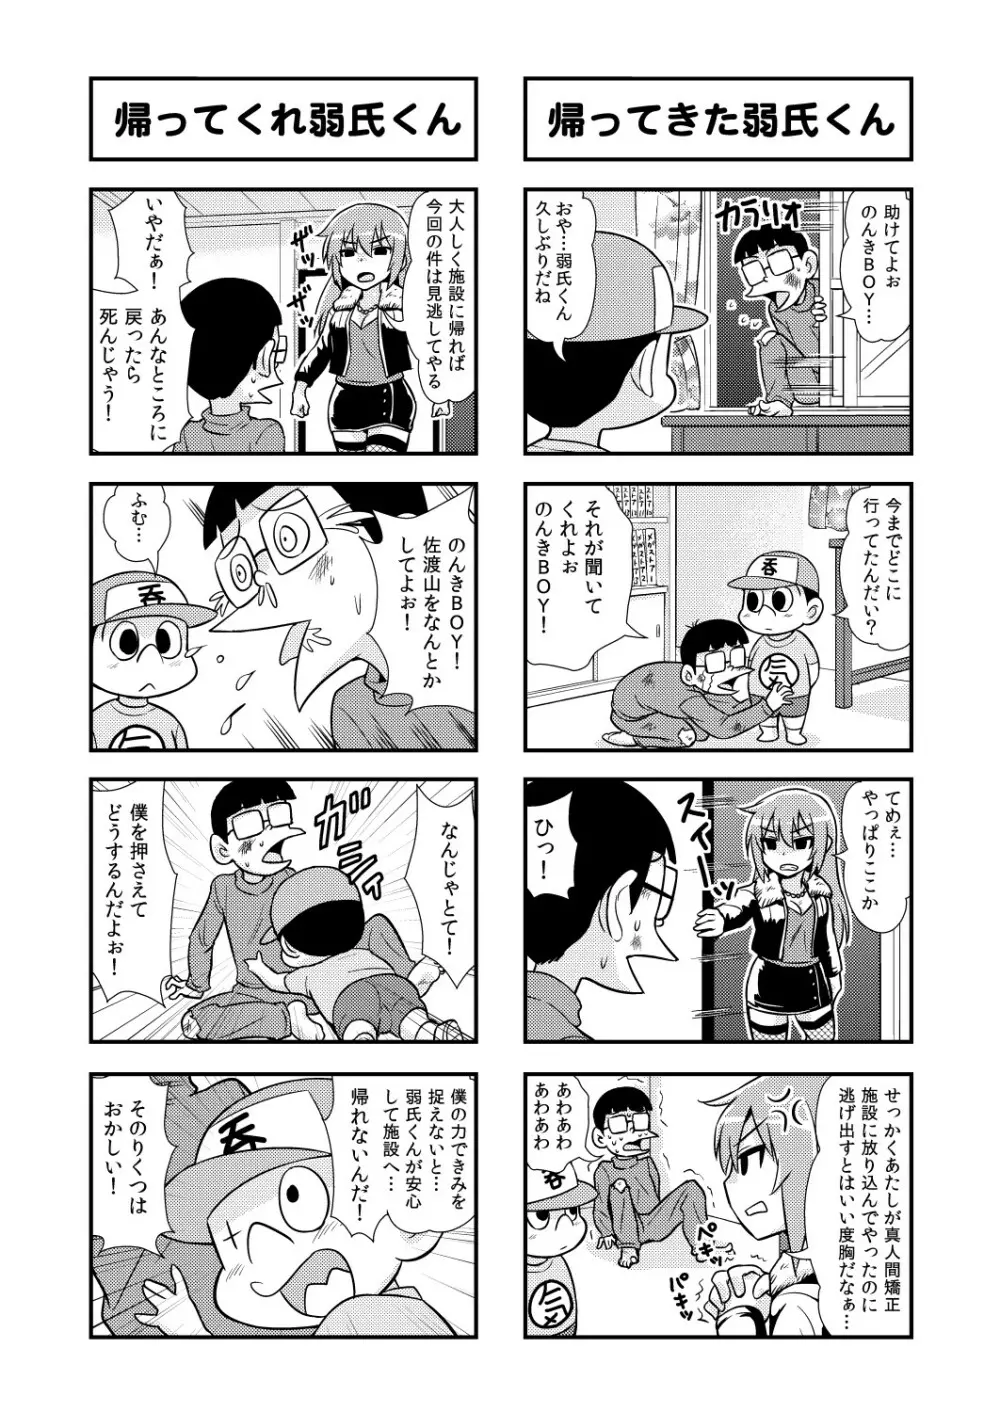 のんきBOY 1-51 49ページ